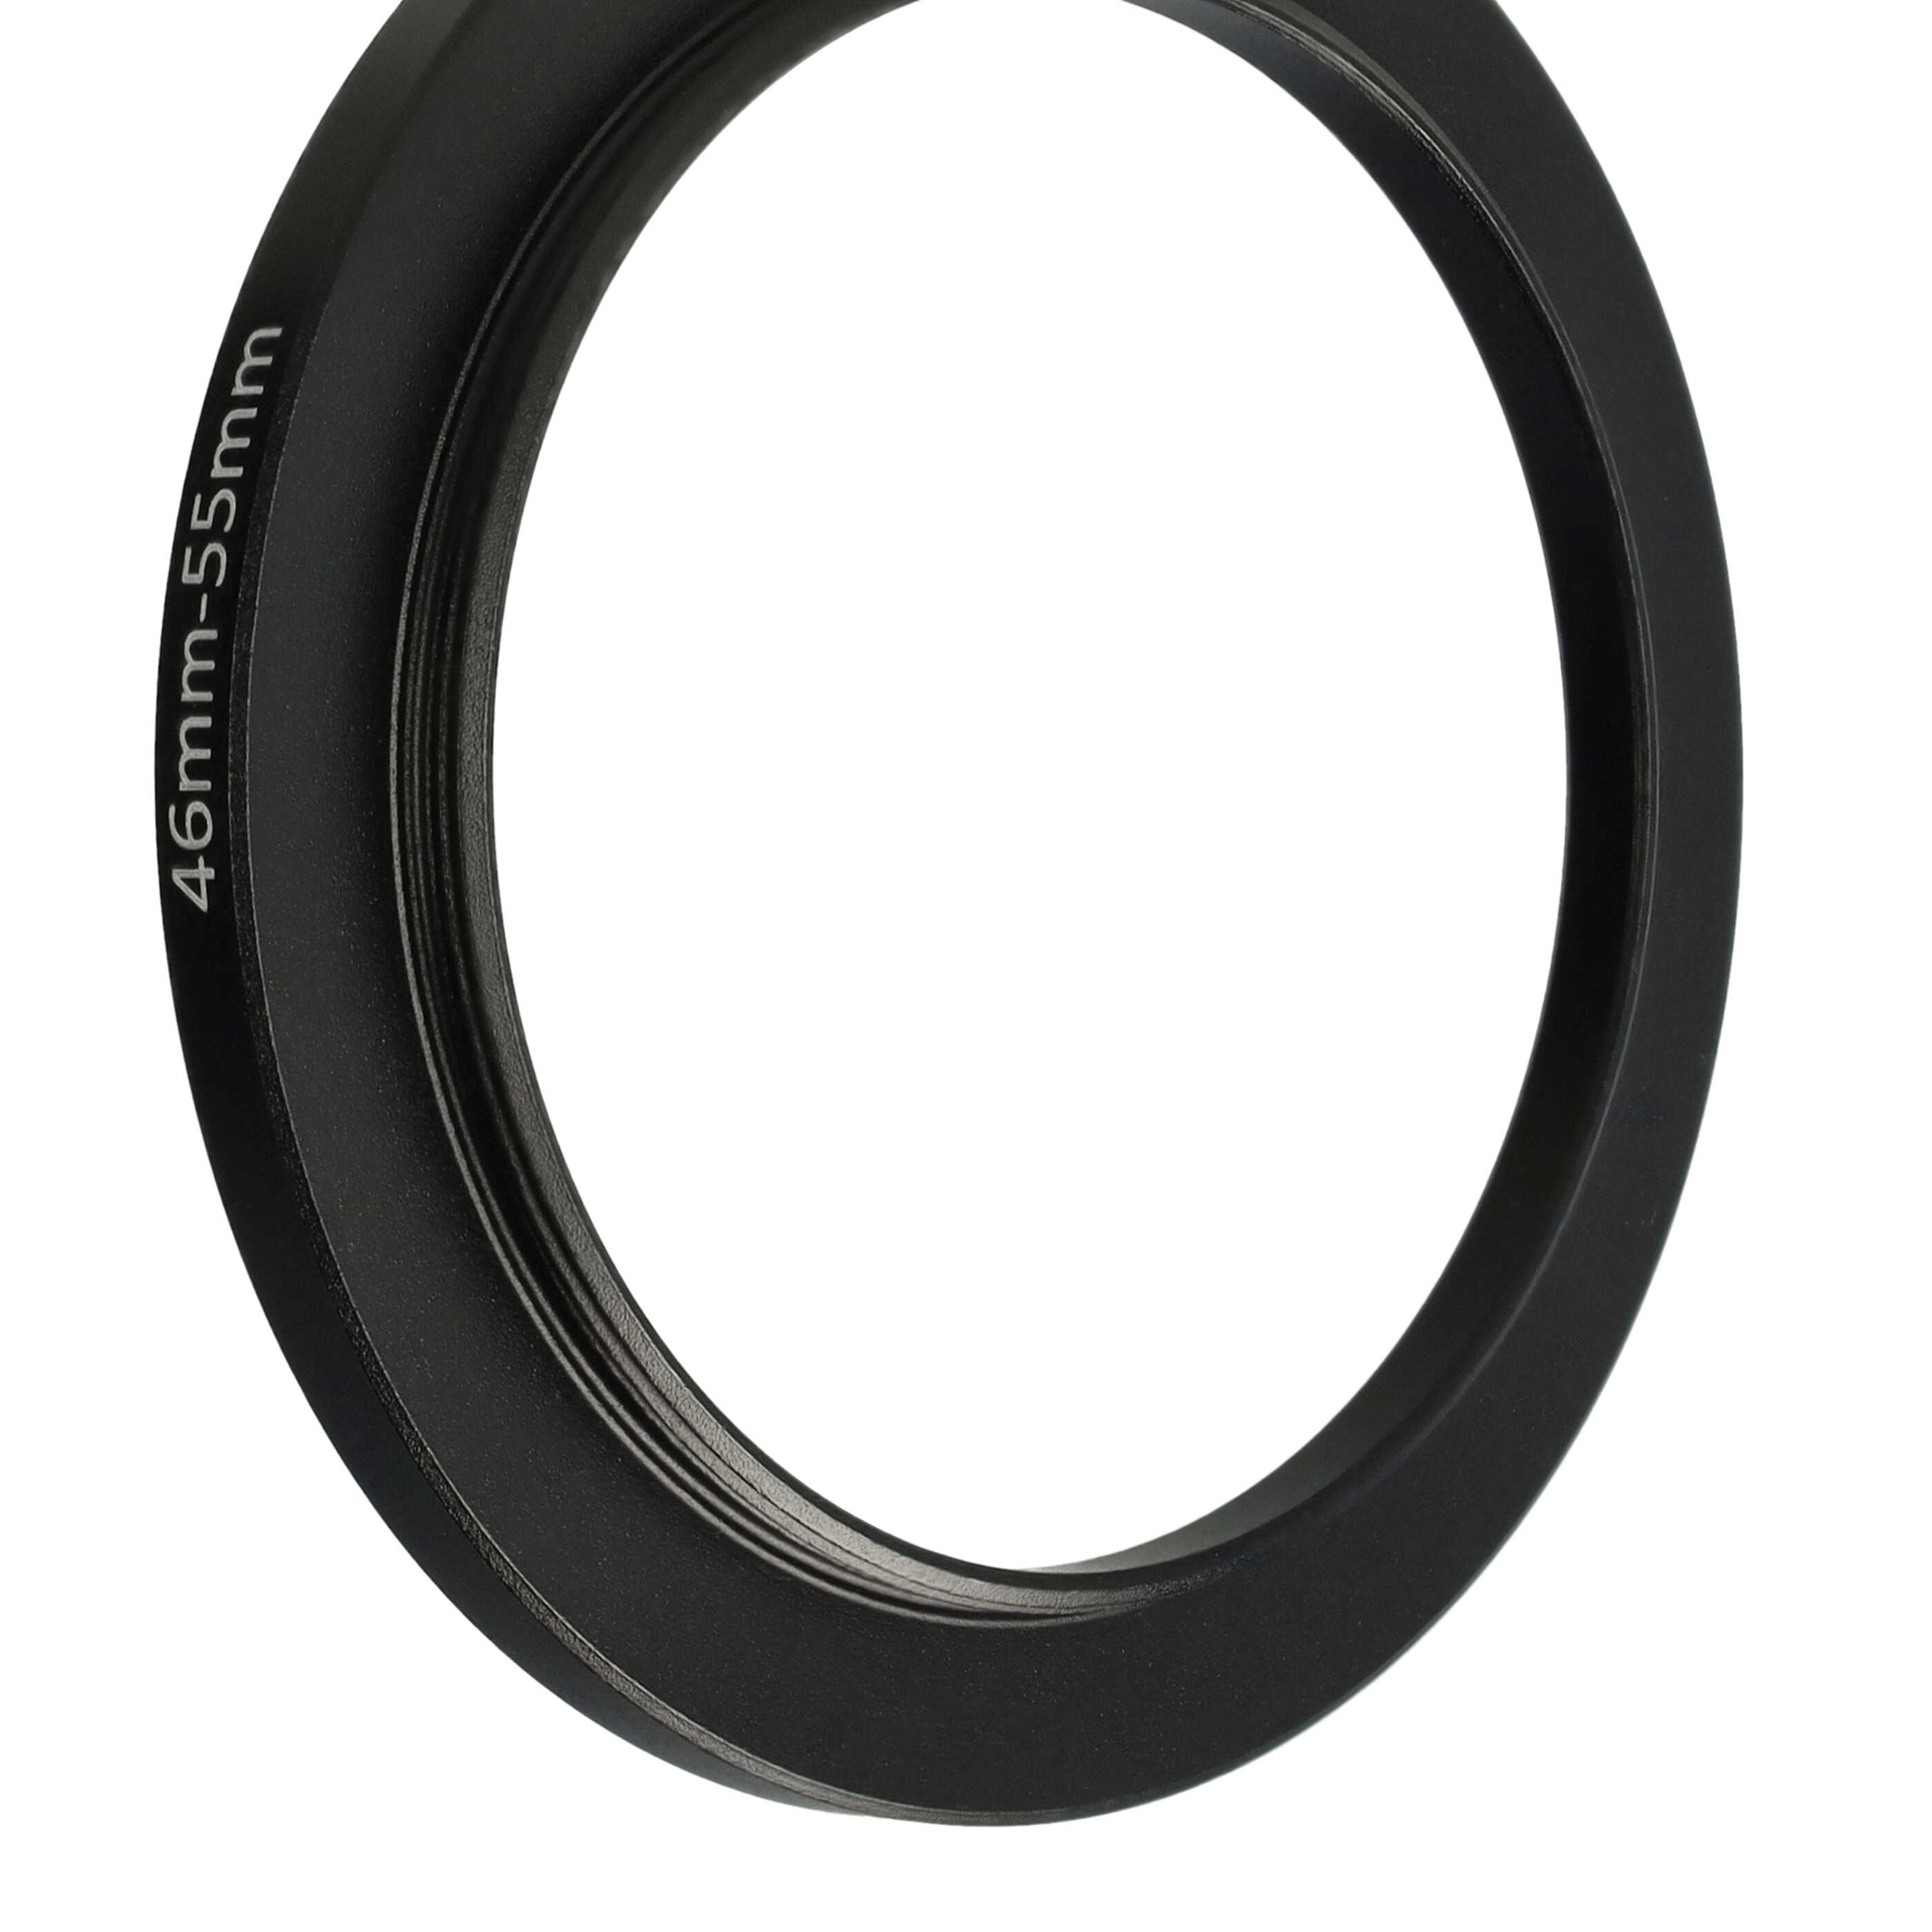 Step-Up-Ring Adapter 46 mm auf 55 mm passend für diverse Kamera-Objektive - Filteradapter